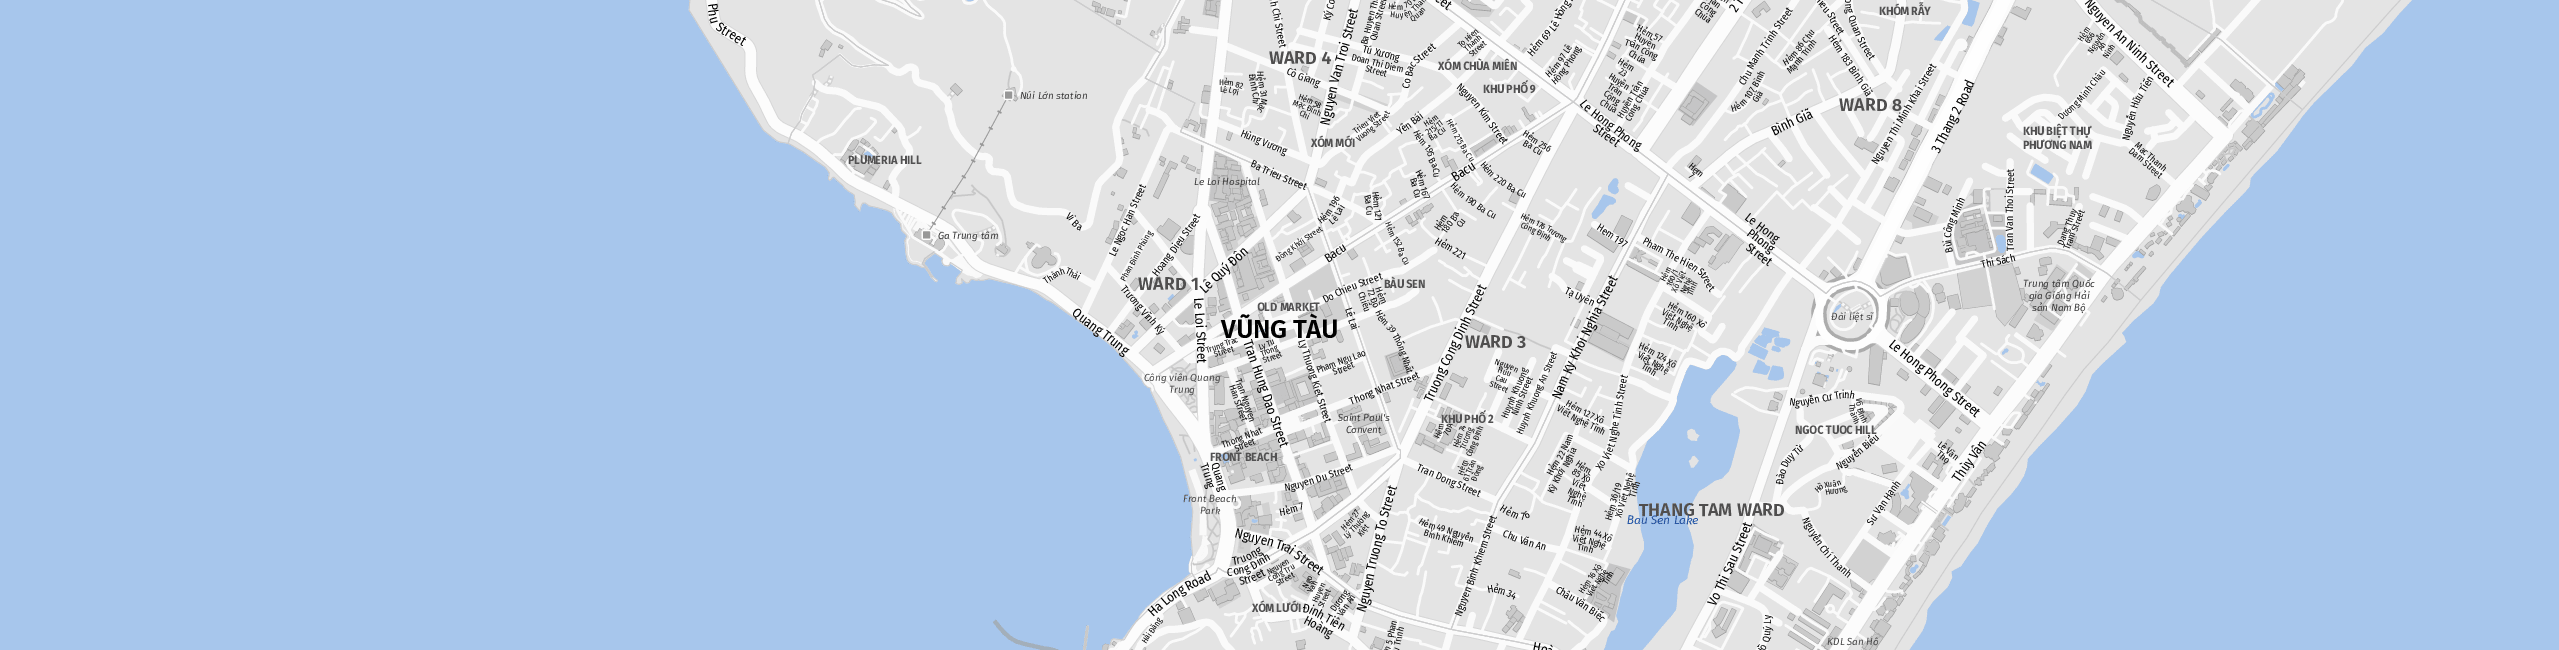 Stadtplan Vung Tau zum Downloaden.